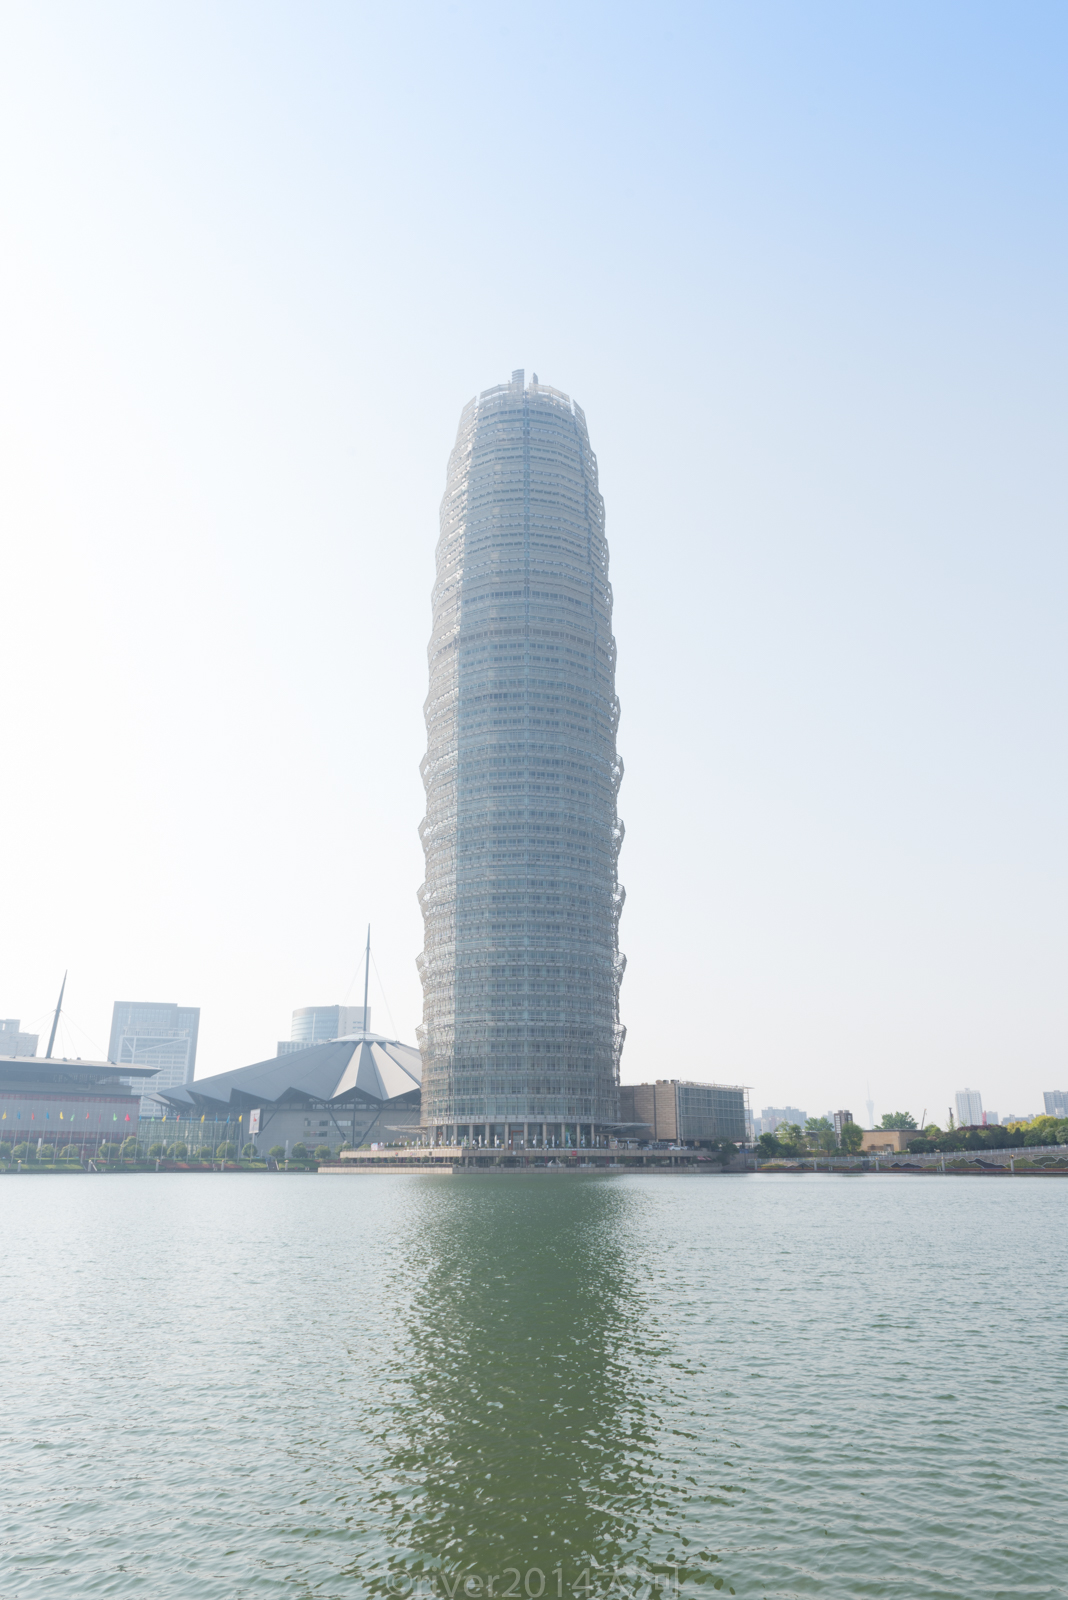 郑州cbd的标志,花22亿元修建成中原第一高楼